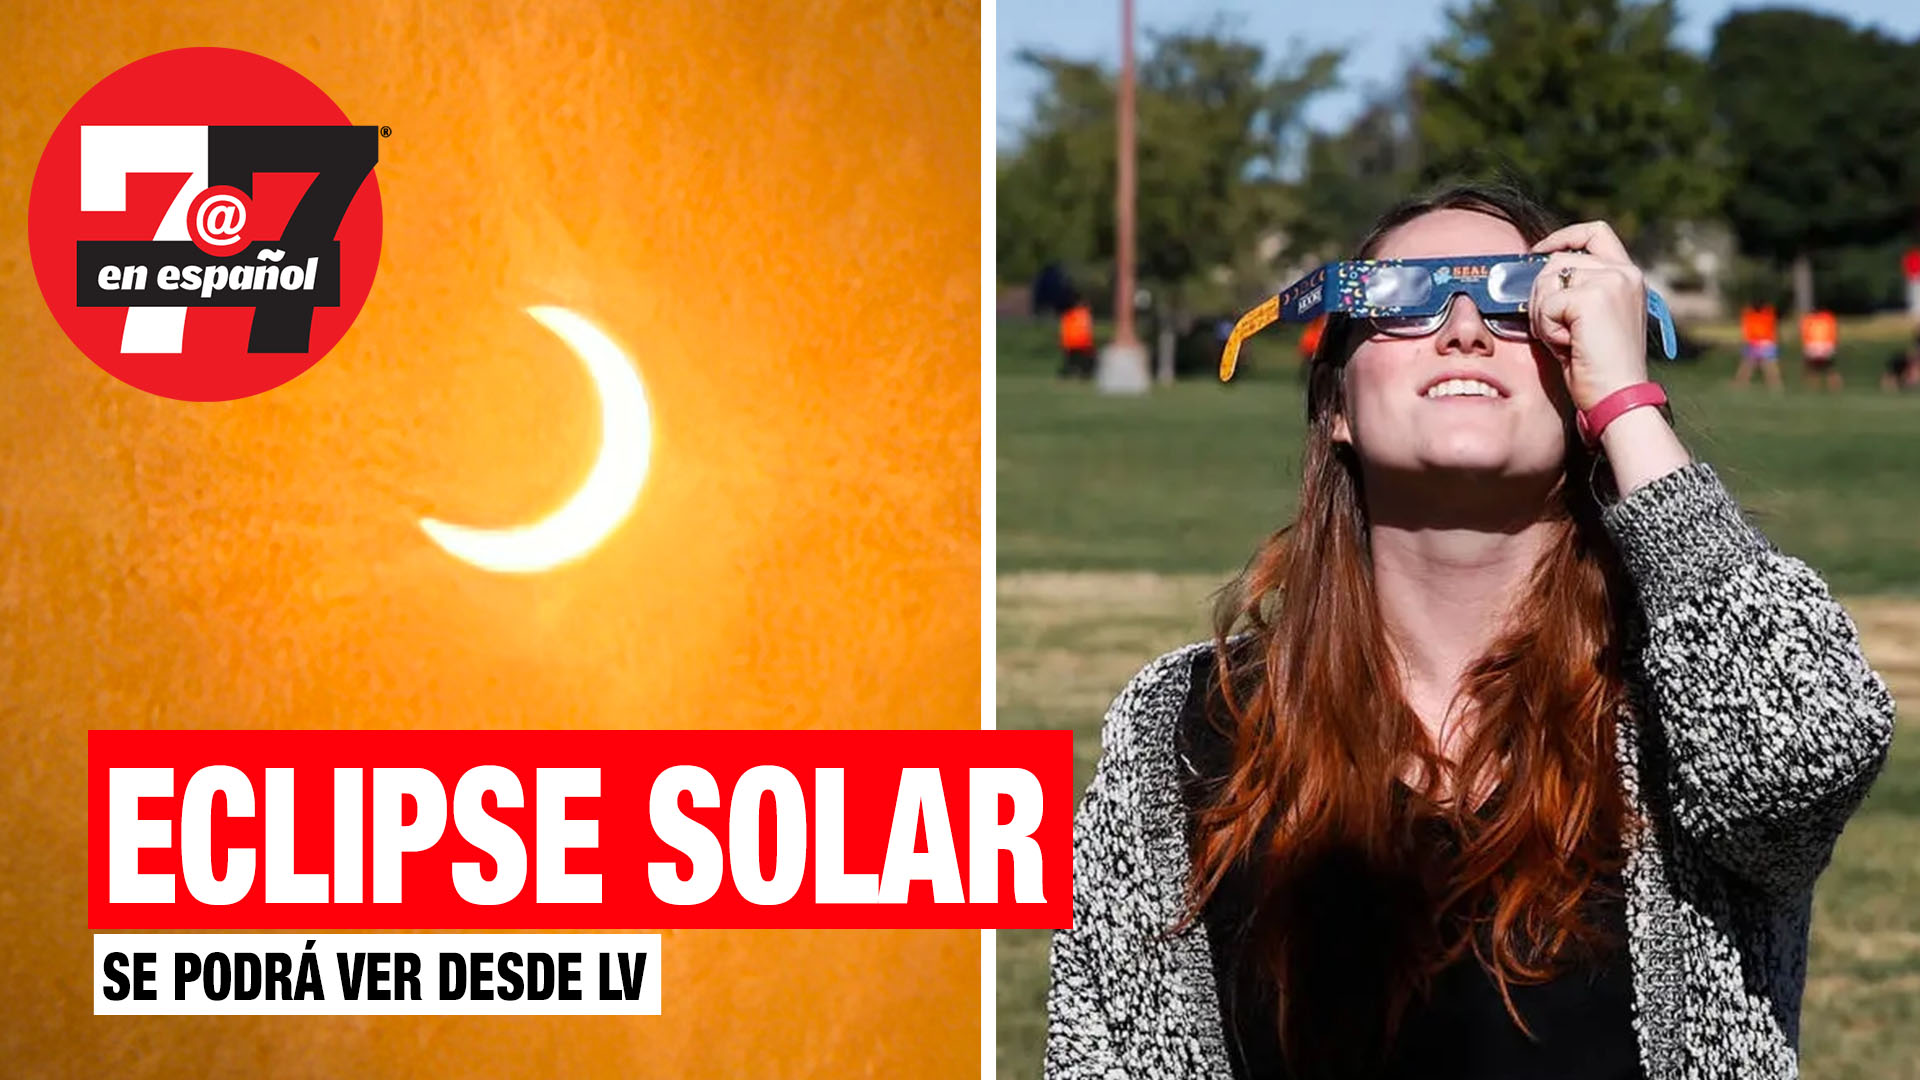 Noticias de Las Vegas | Eclipse solar podrá ser visto desde Las Vegas, con precauciones